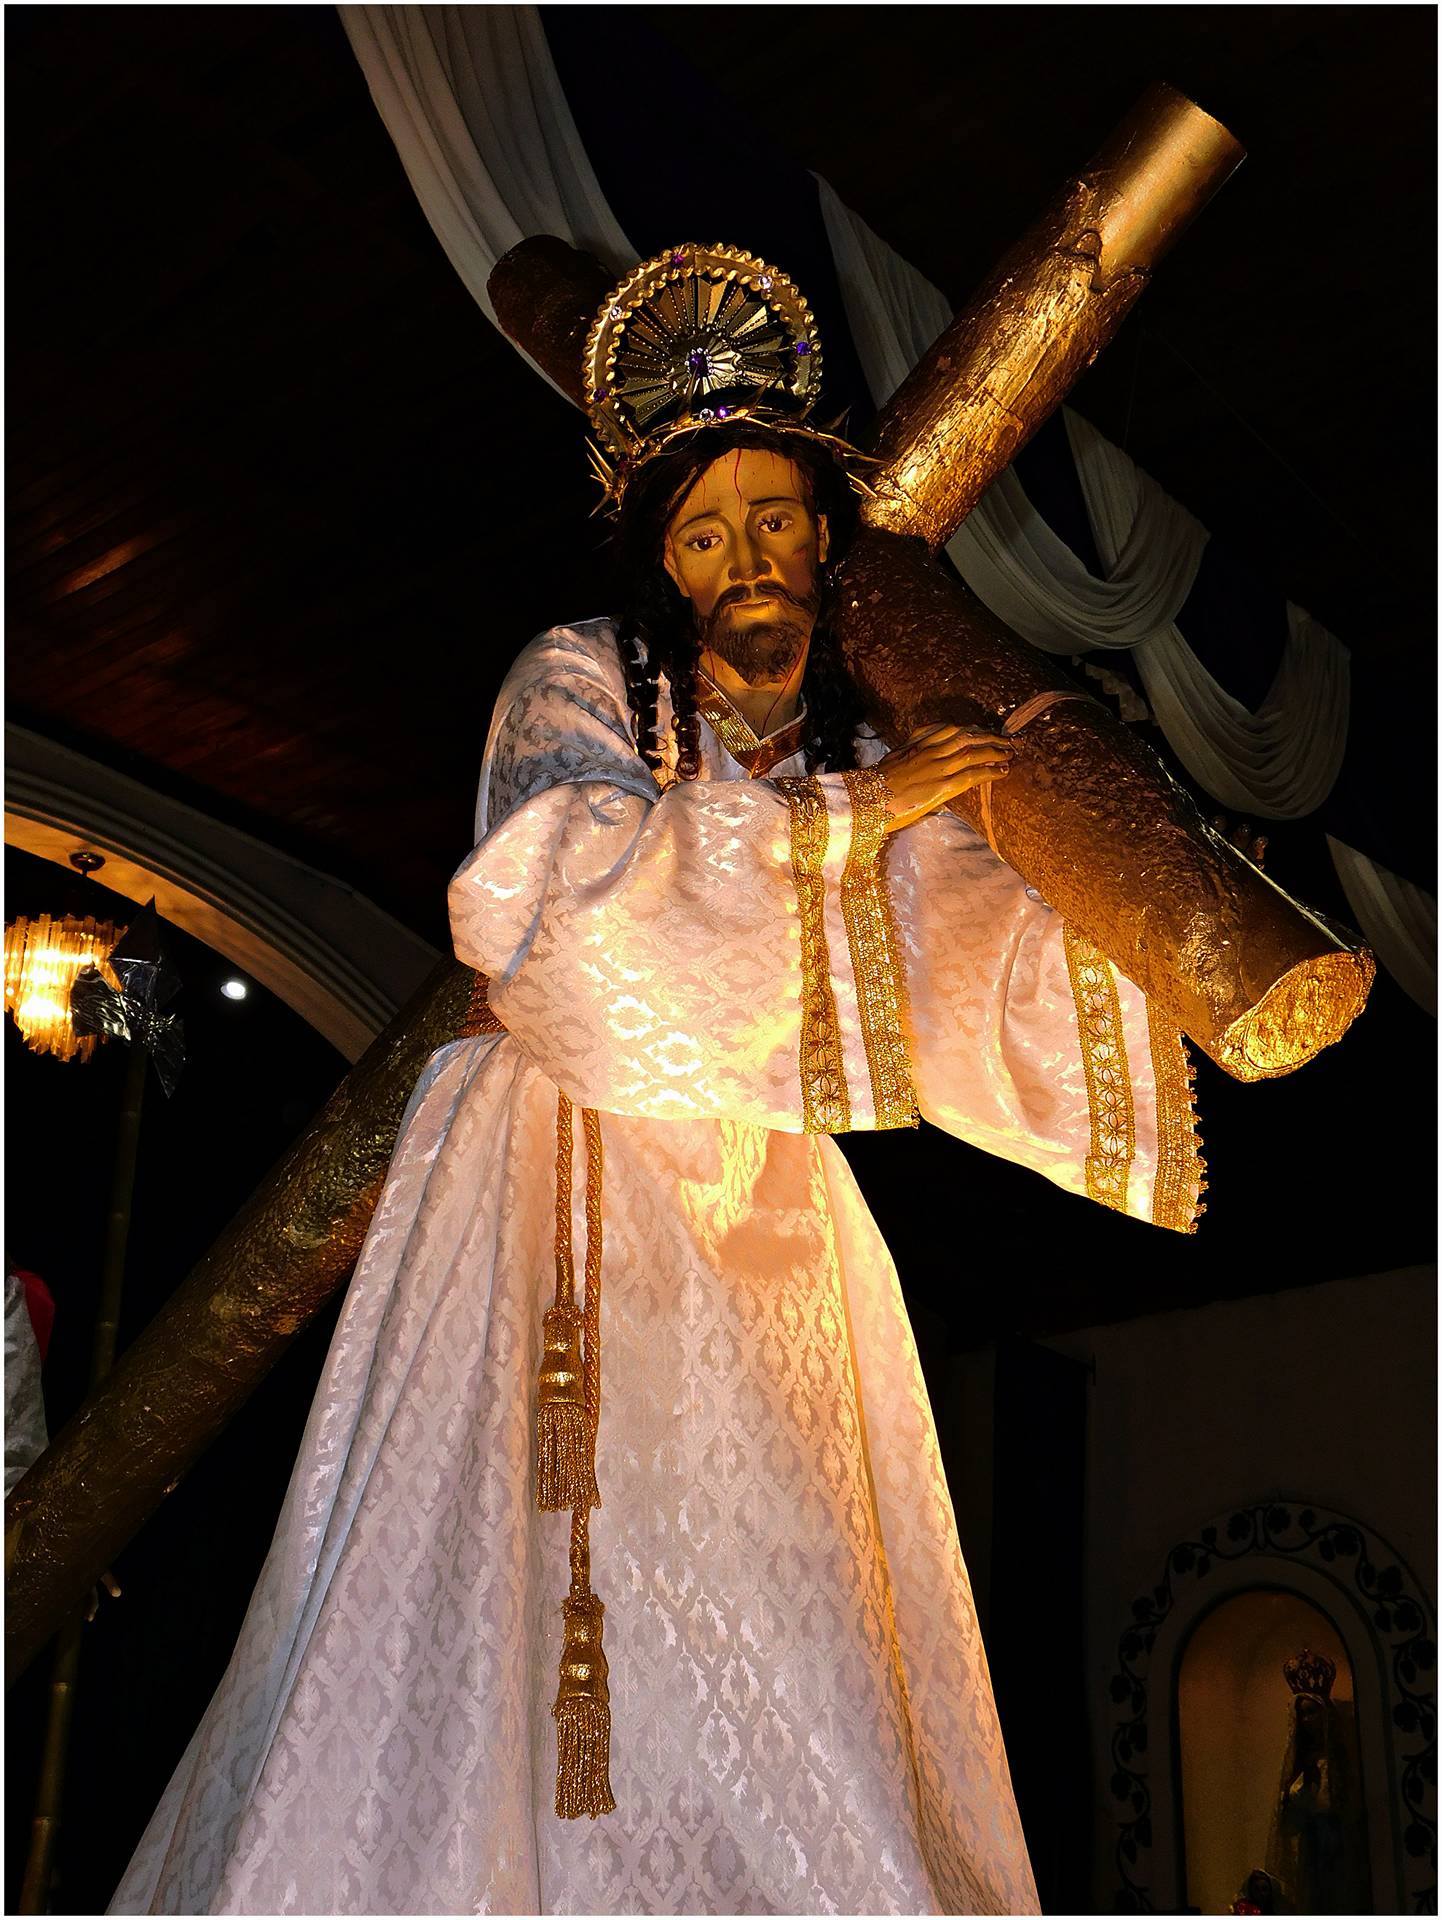 Jesús Nazareno de San Antonio el Teocinte